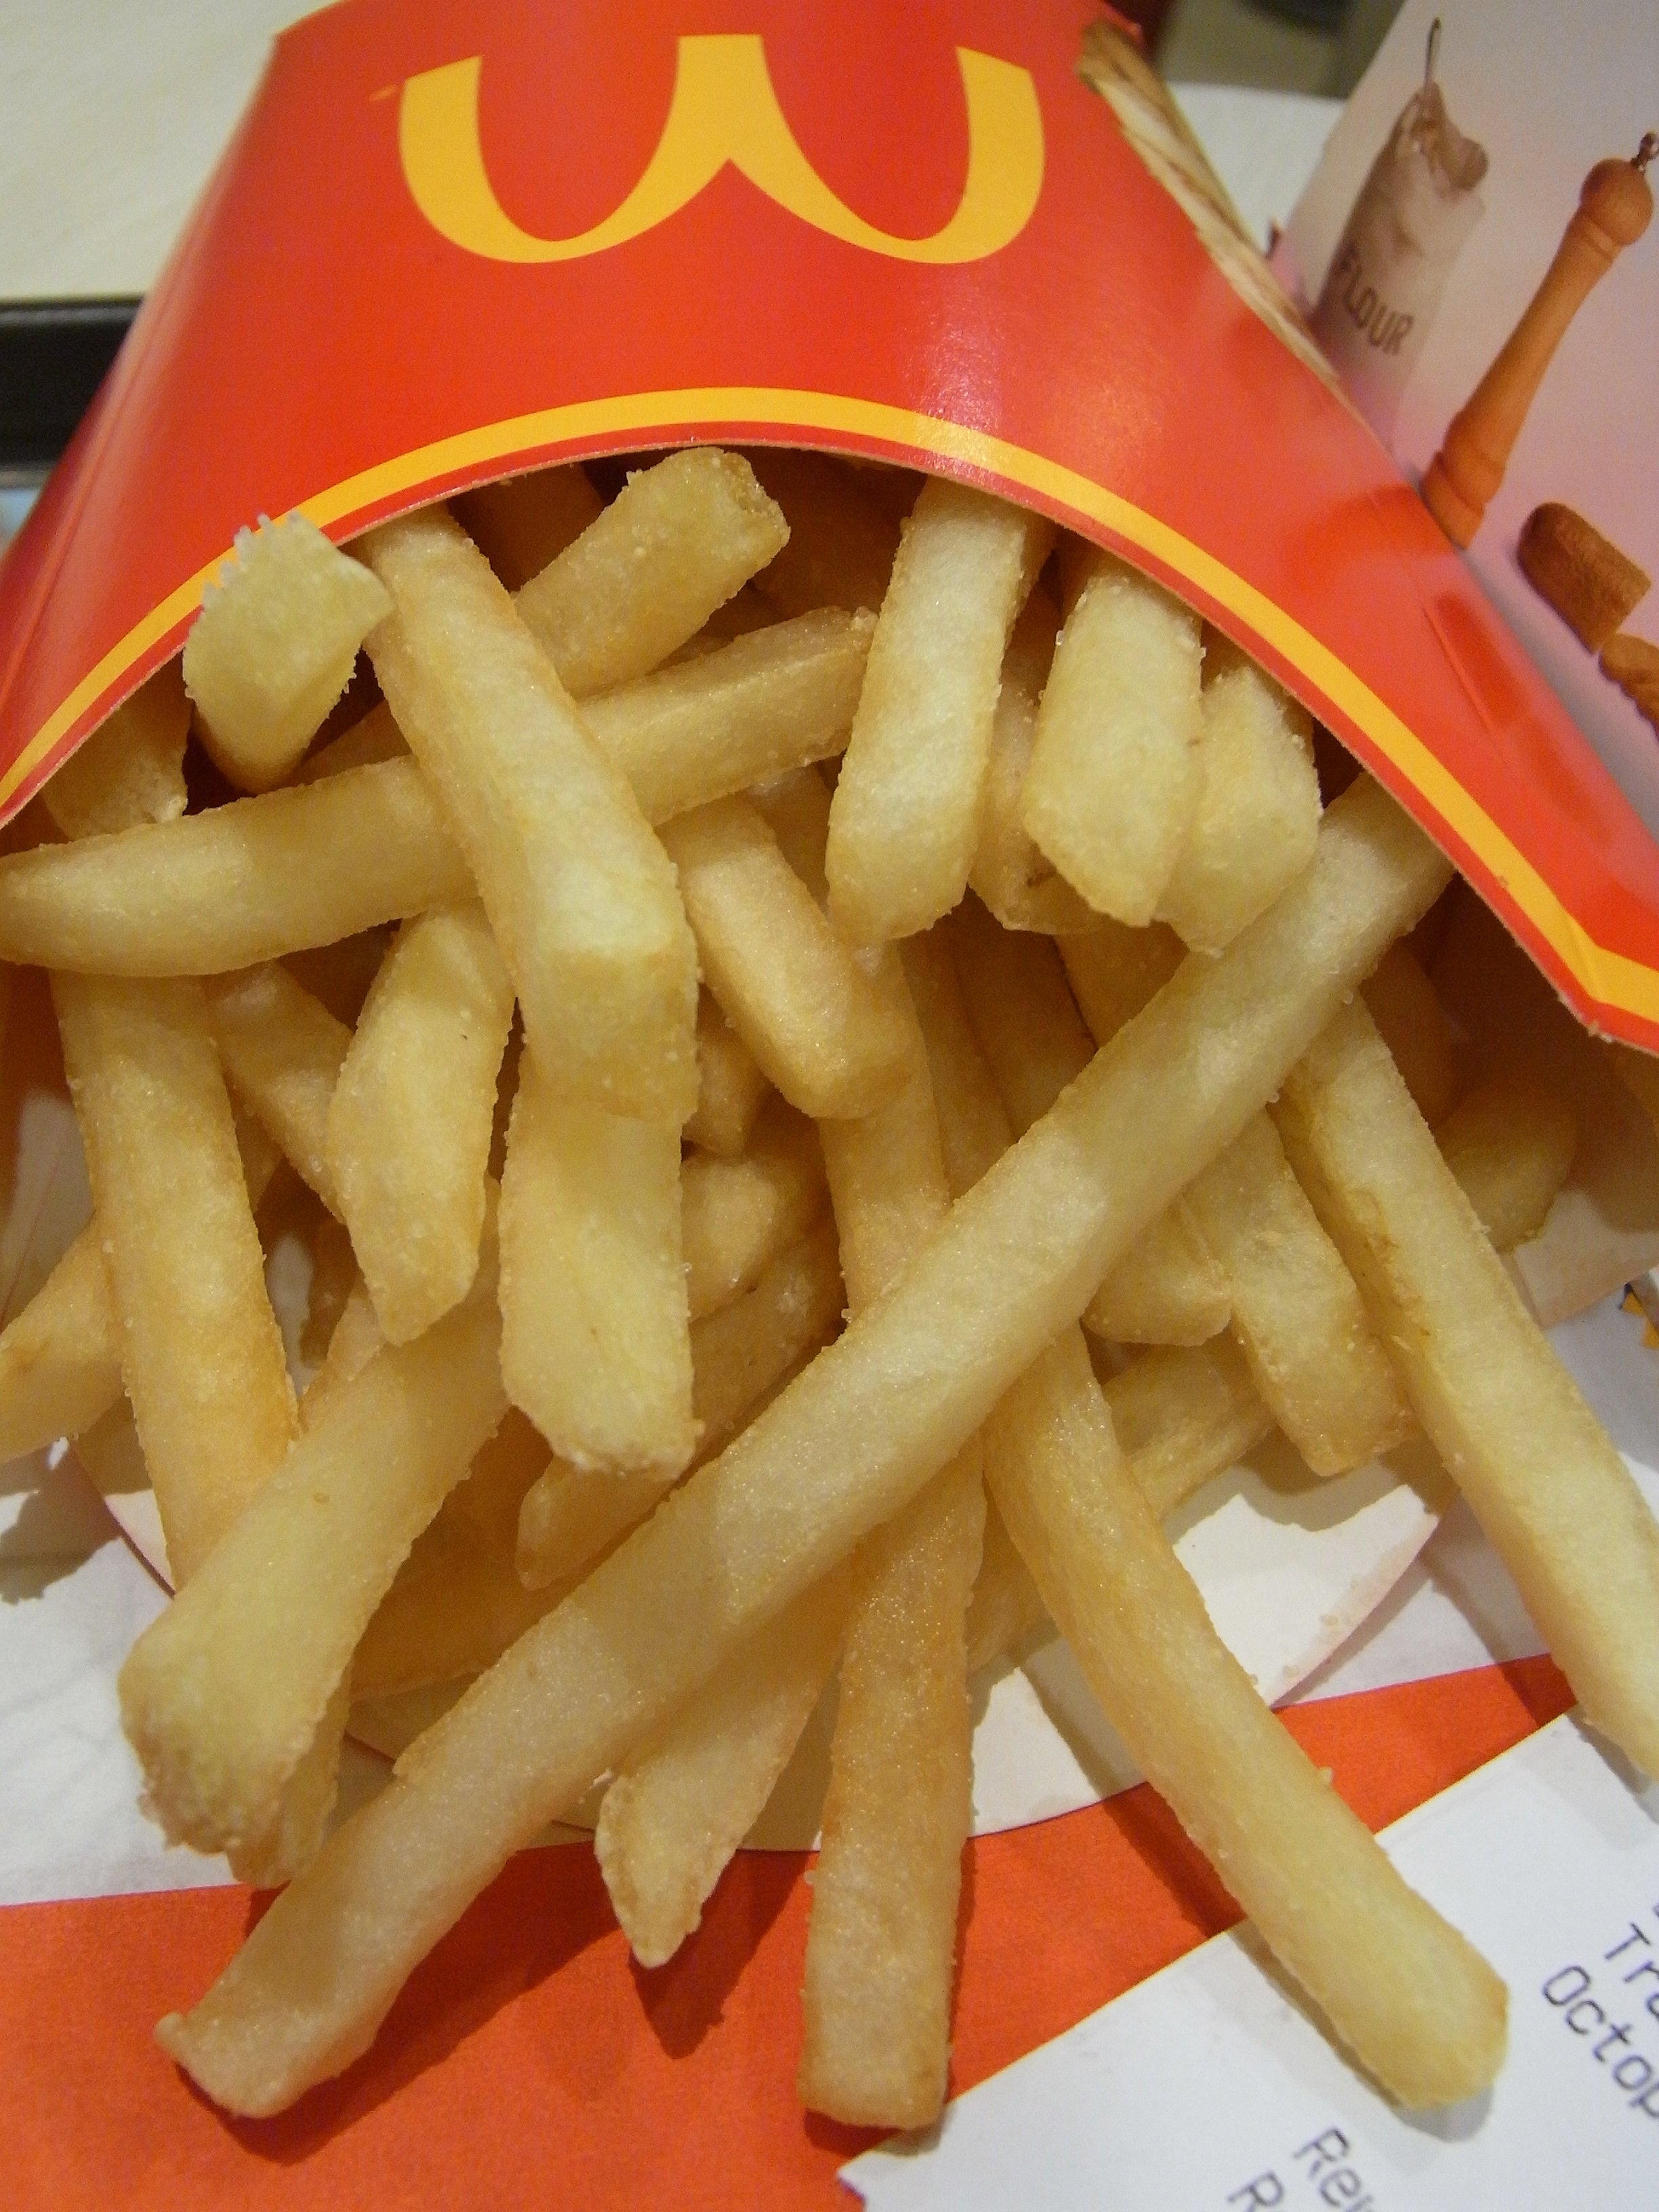 Las patatas fritas de McDonald's sirven para...